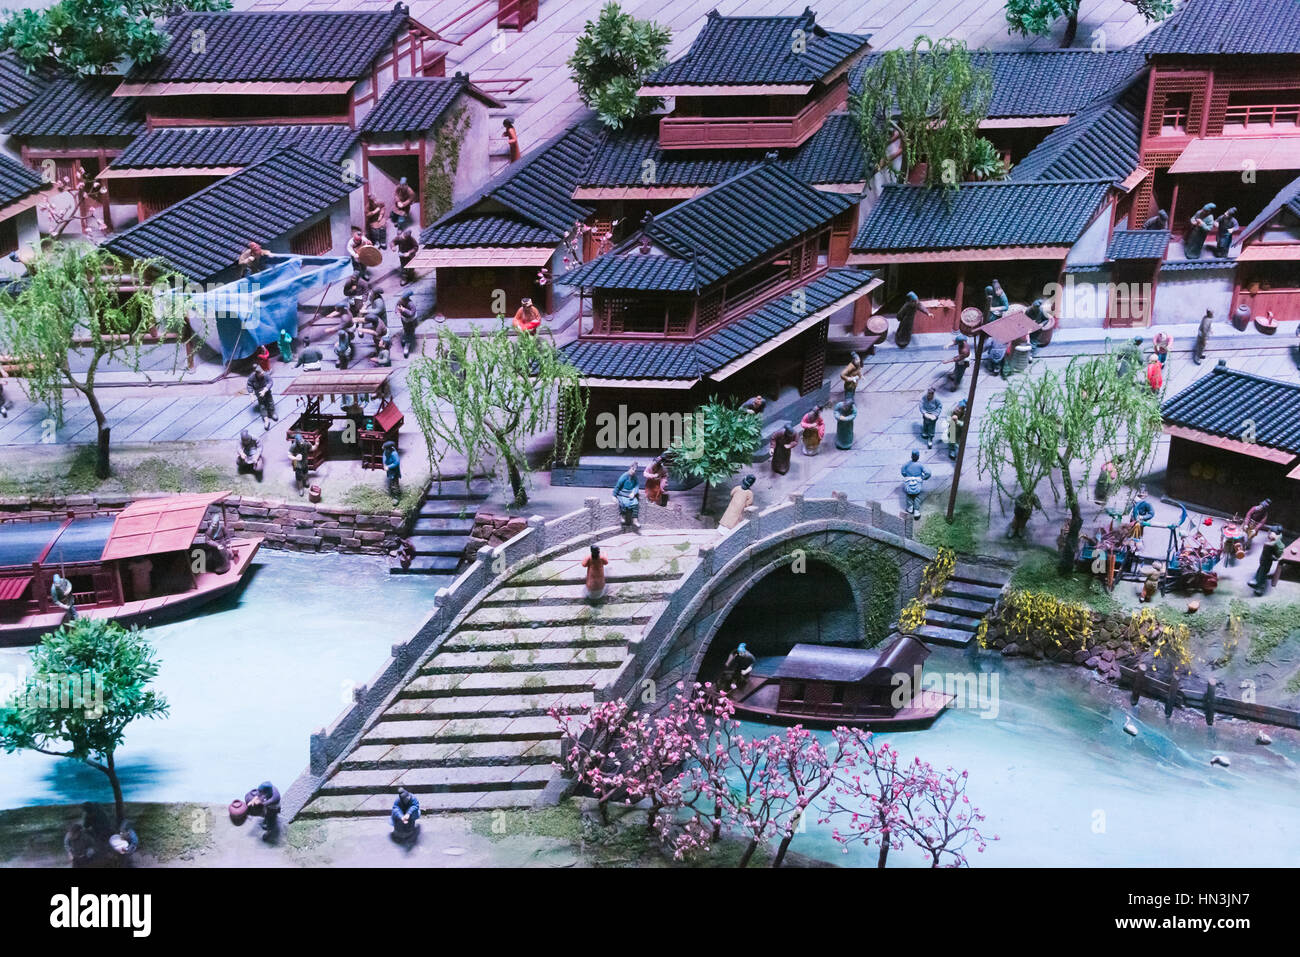 3D model showing old days Hangzhou, Zhejiang Province, China Stock Photo